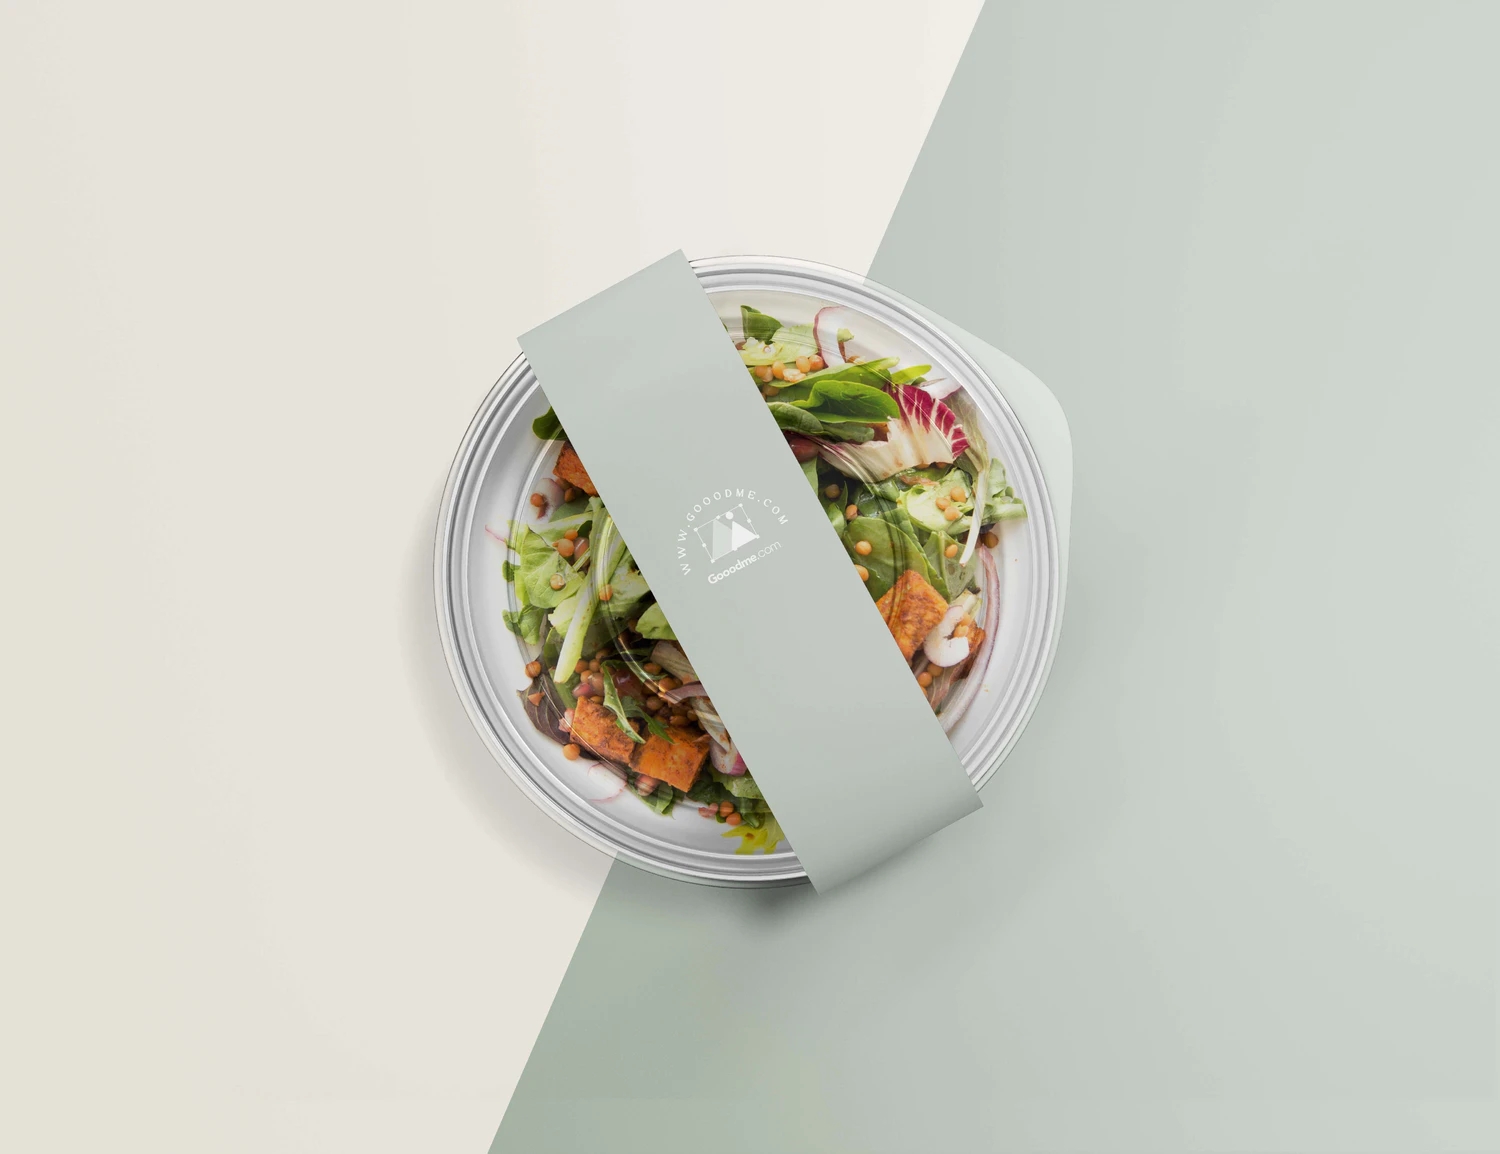 18款轻食沙拉品牌VI样机网红轻食沙拉食品品牌VI提案样机素材包YC245